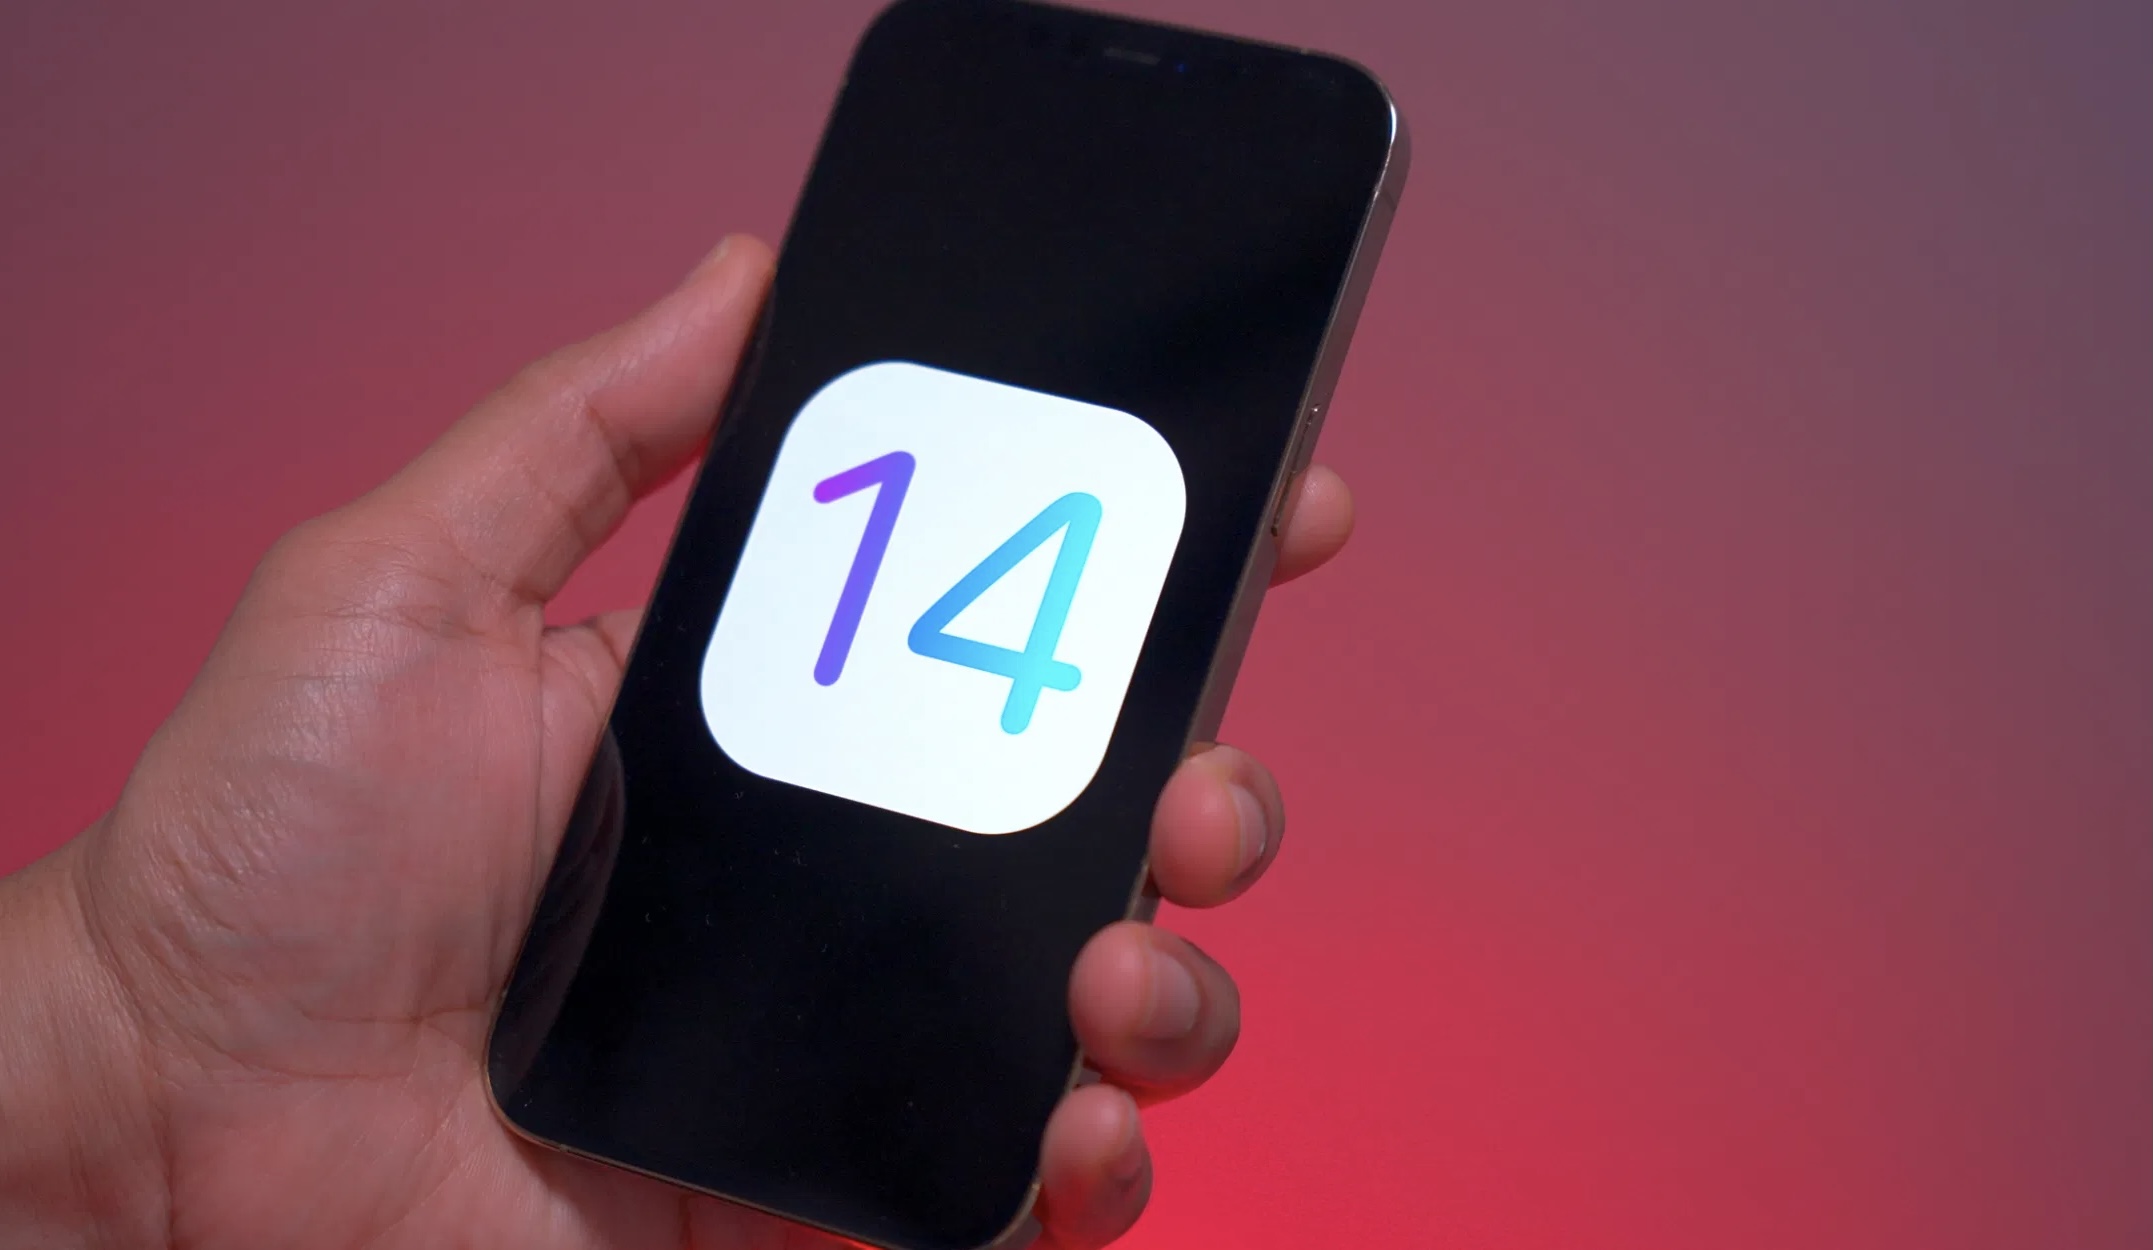 Вышла iOS 14.6 beta 1 для разработчиков. Что нового